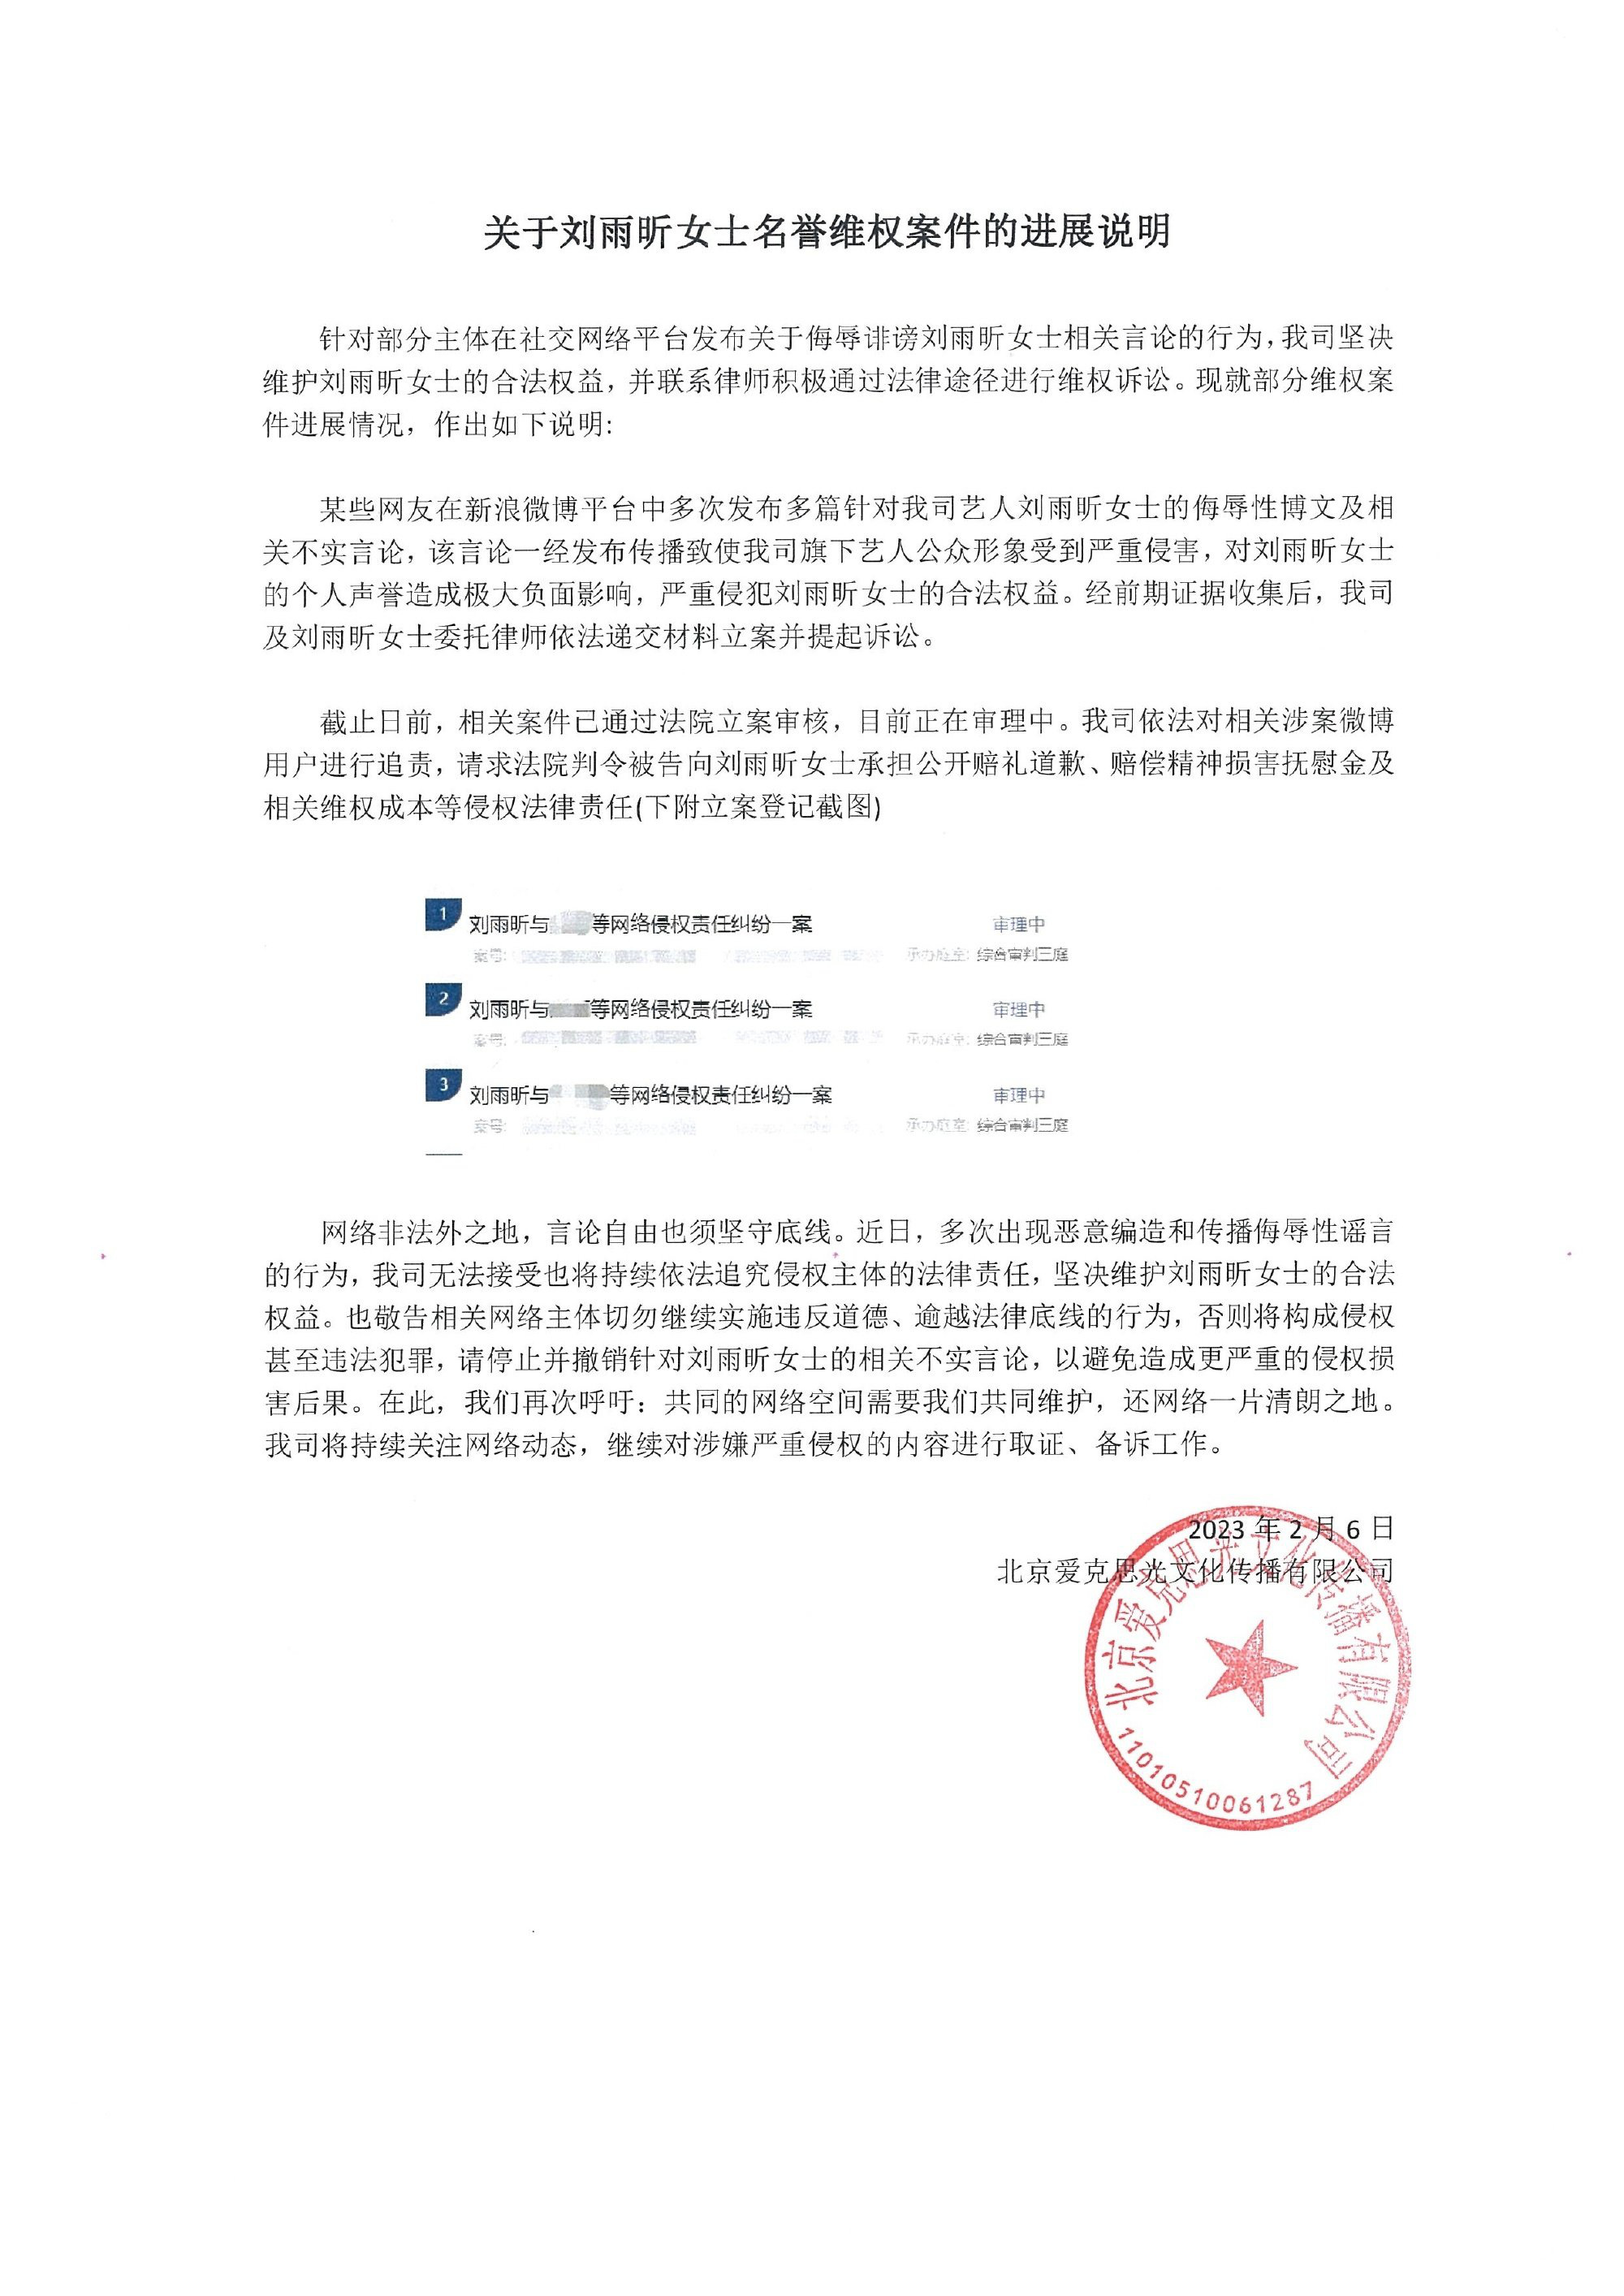 刘雨昕工作室发布名誉维权案件进展说明 将依法追究侵权主体法律责任